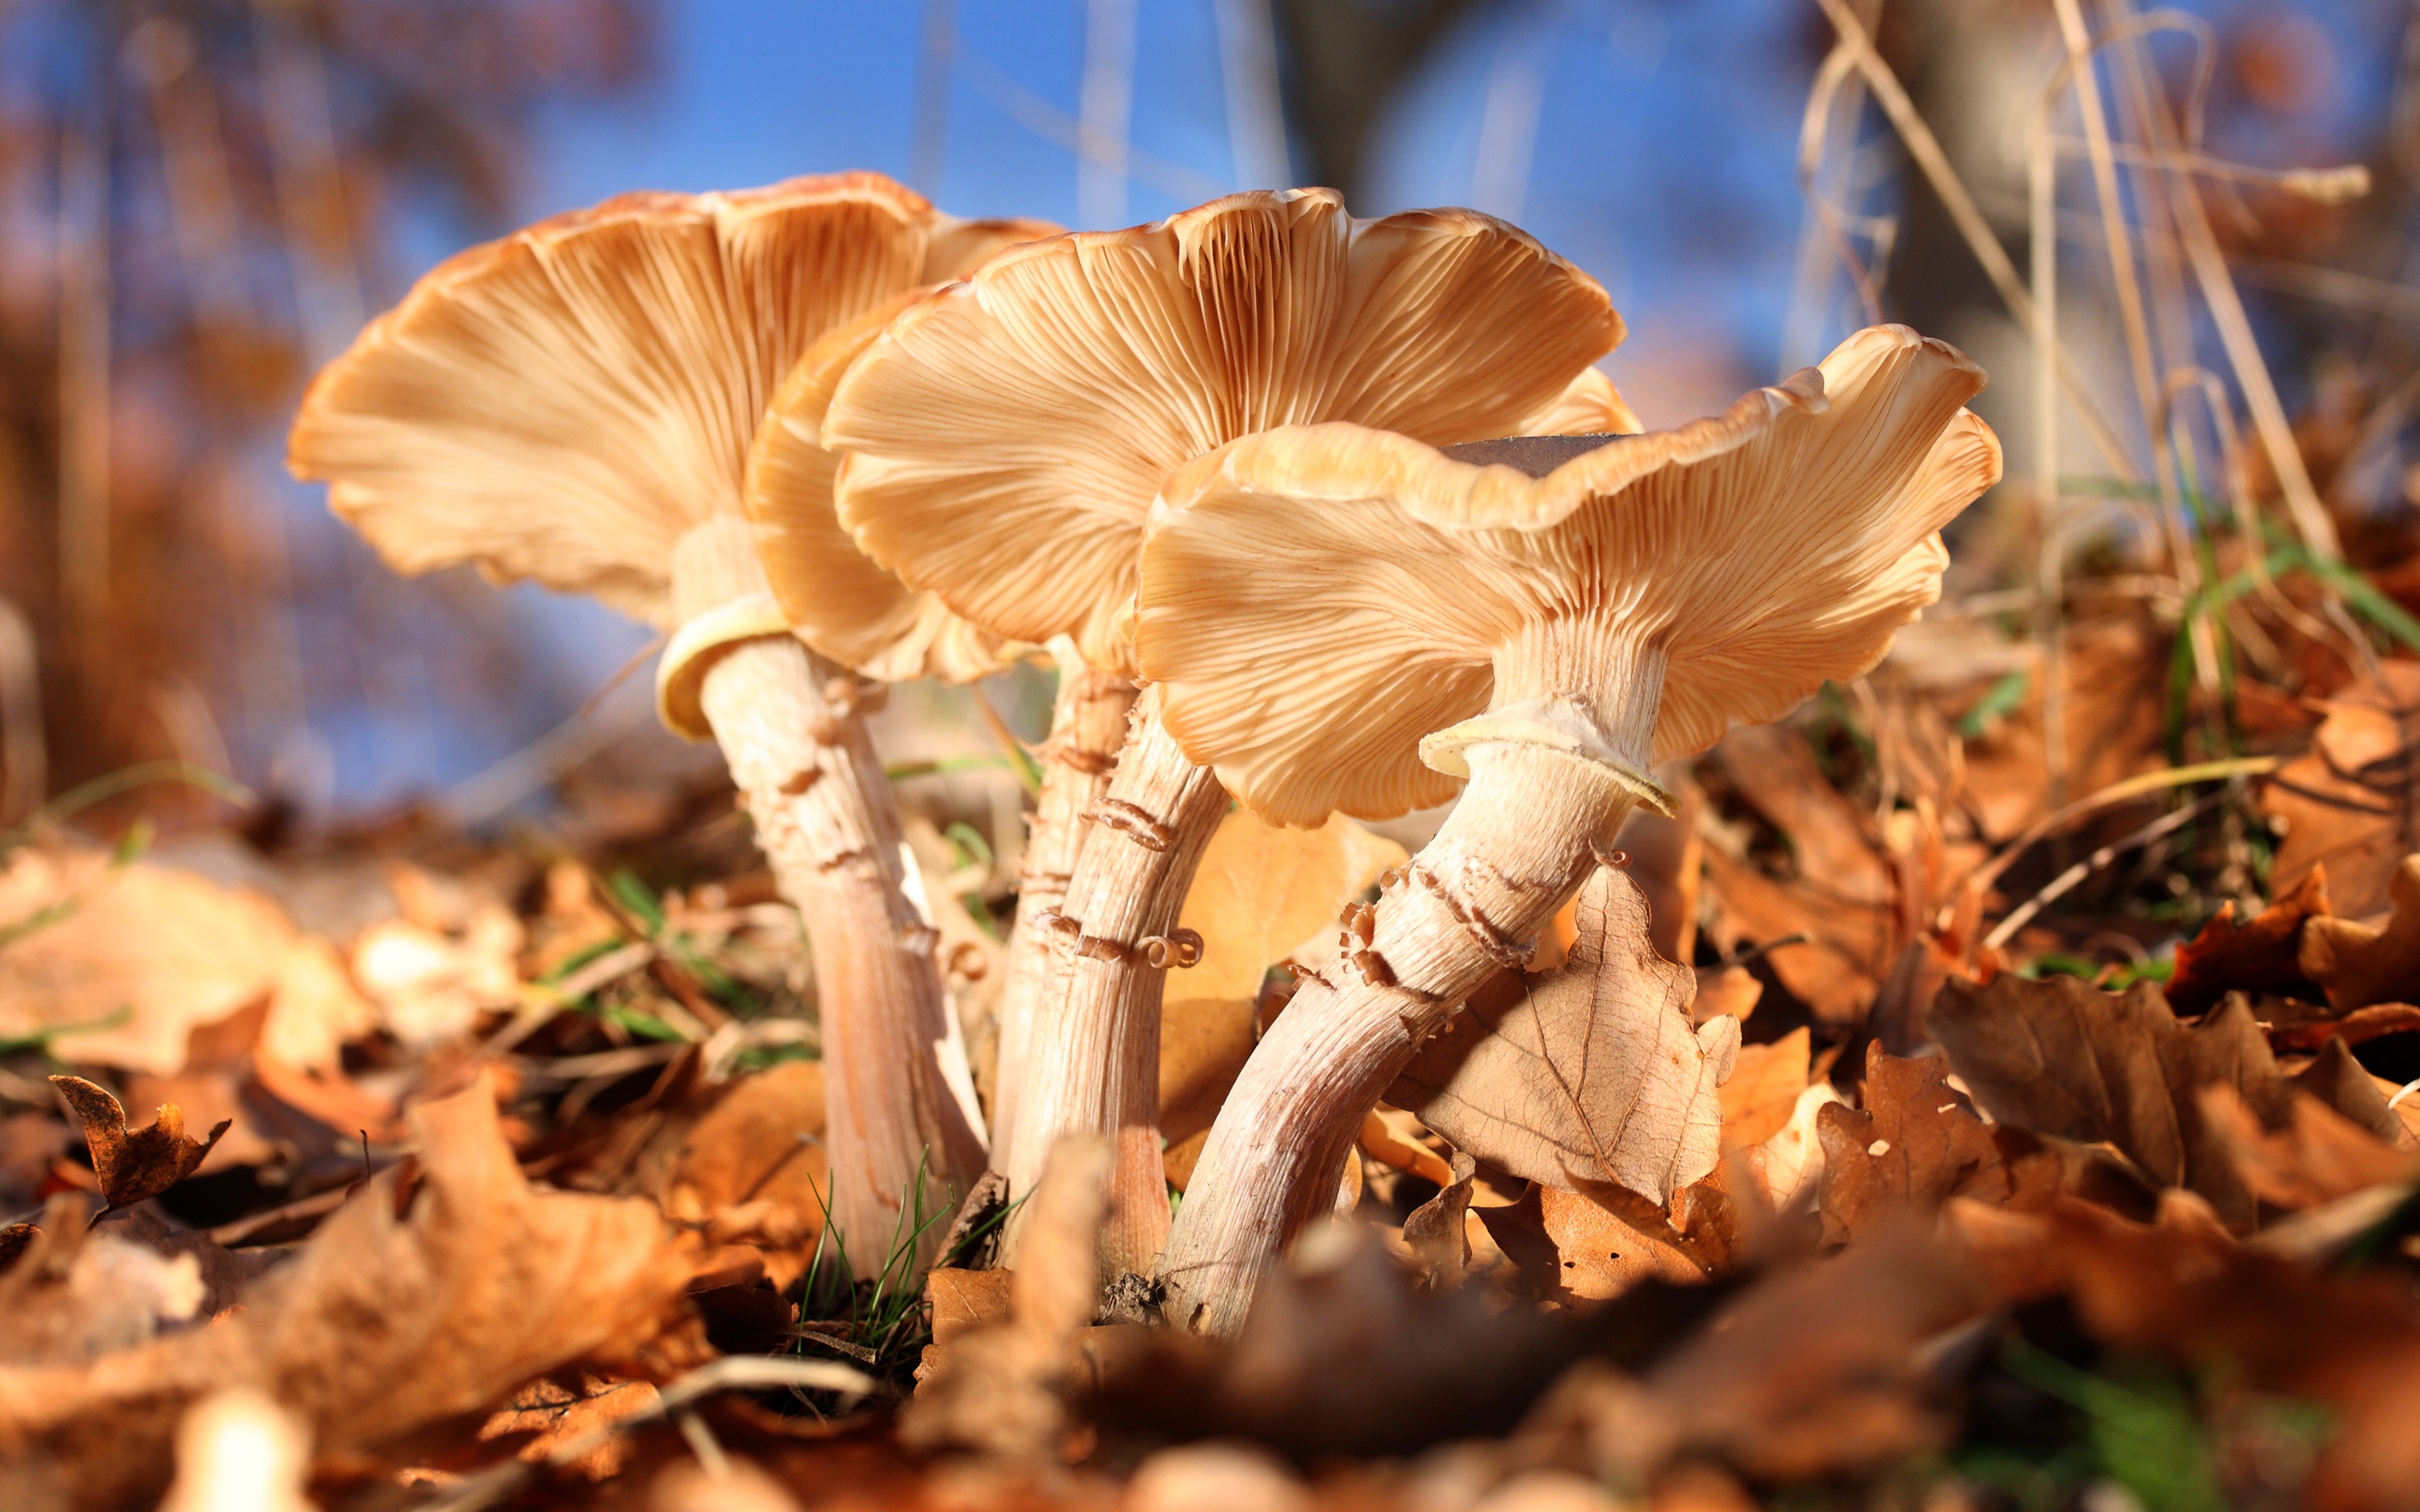 图/ic photo夏季是野生蘑菇的生长旺季,也是食用野生蘑菇中毒的高发